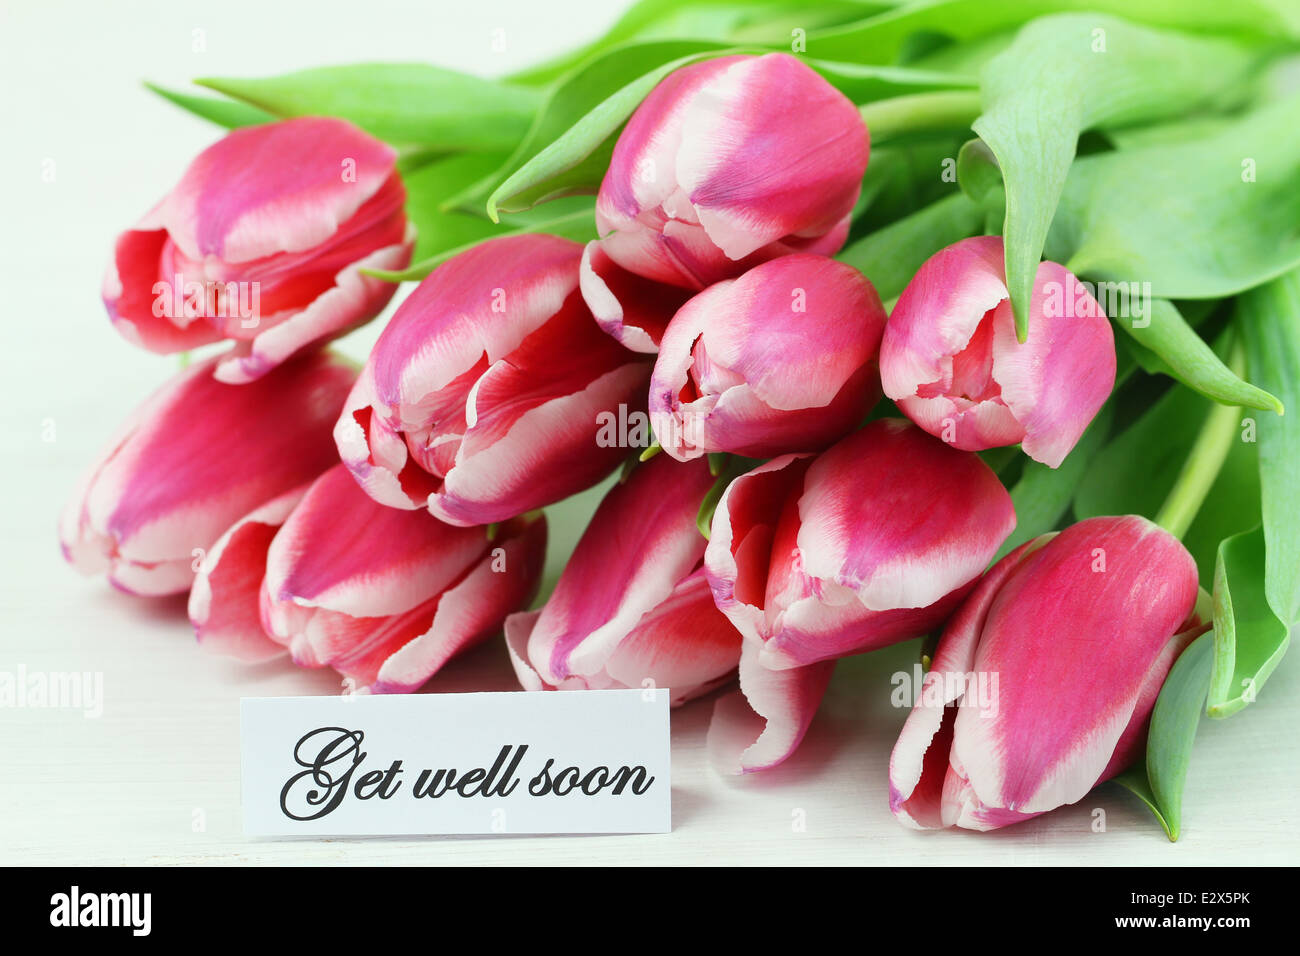 Carte de prompt avec des tulipes roses Banque D'Images